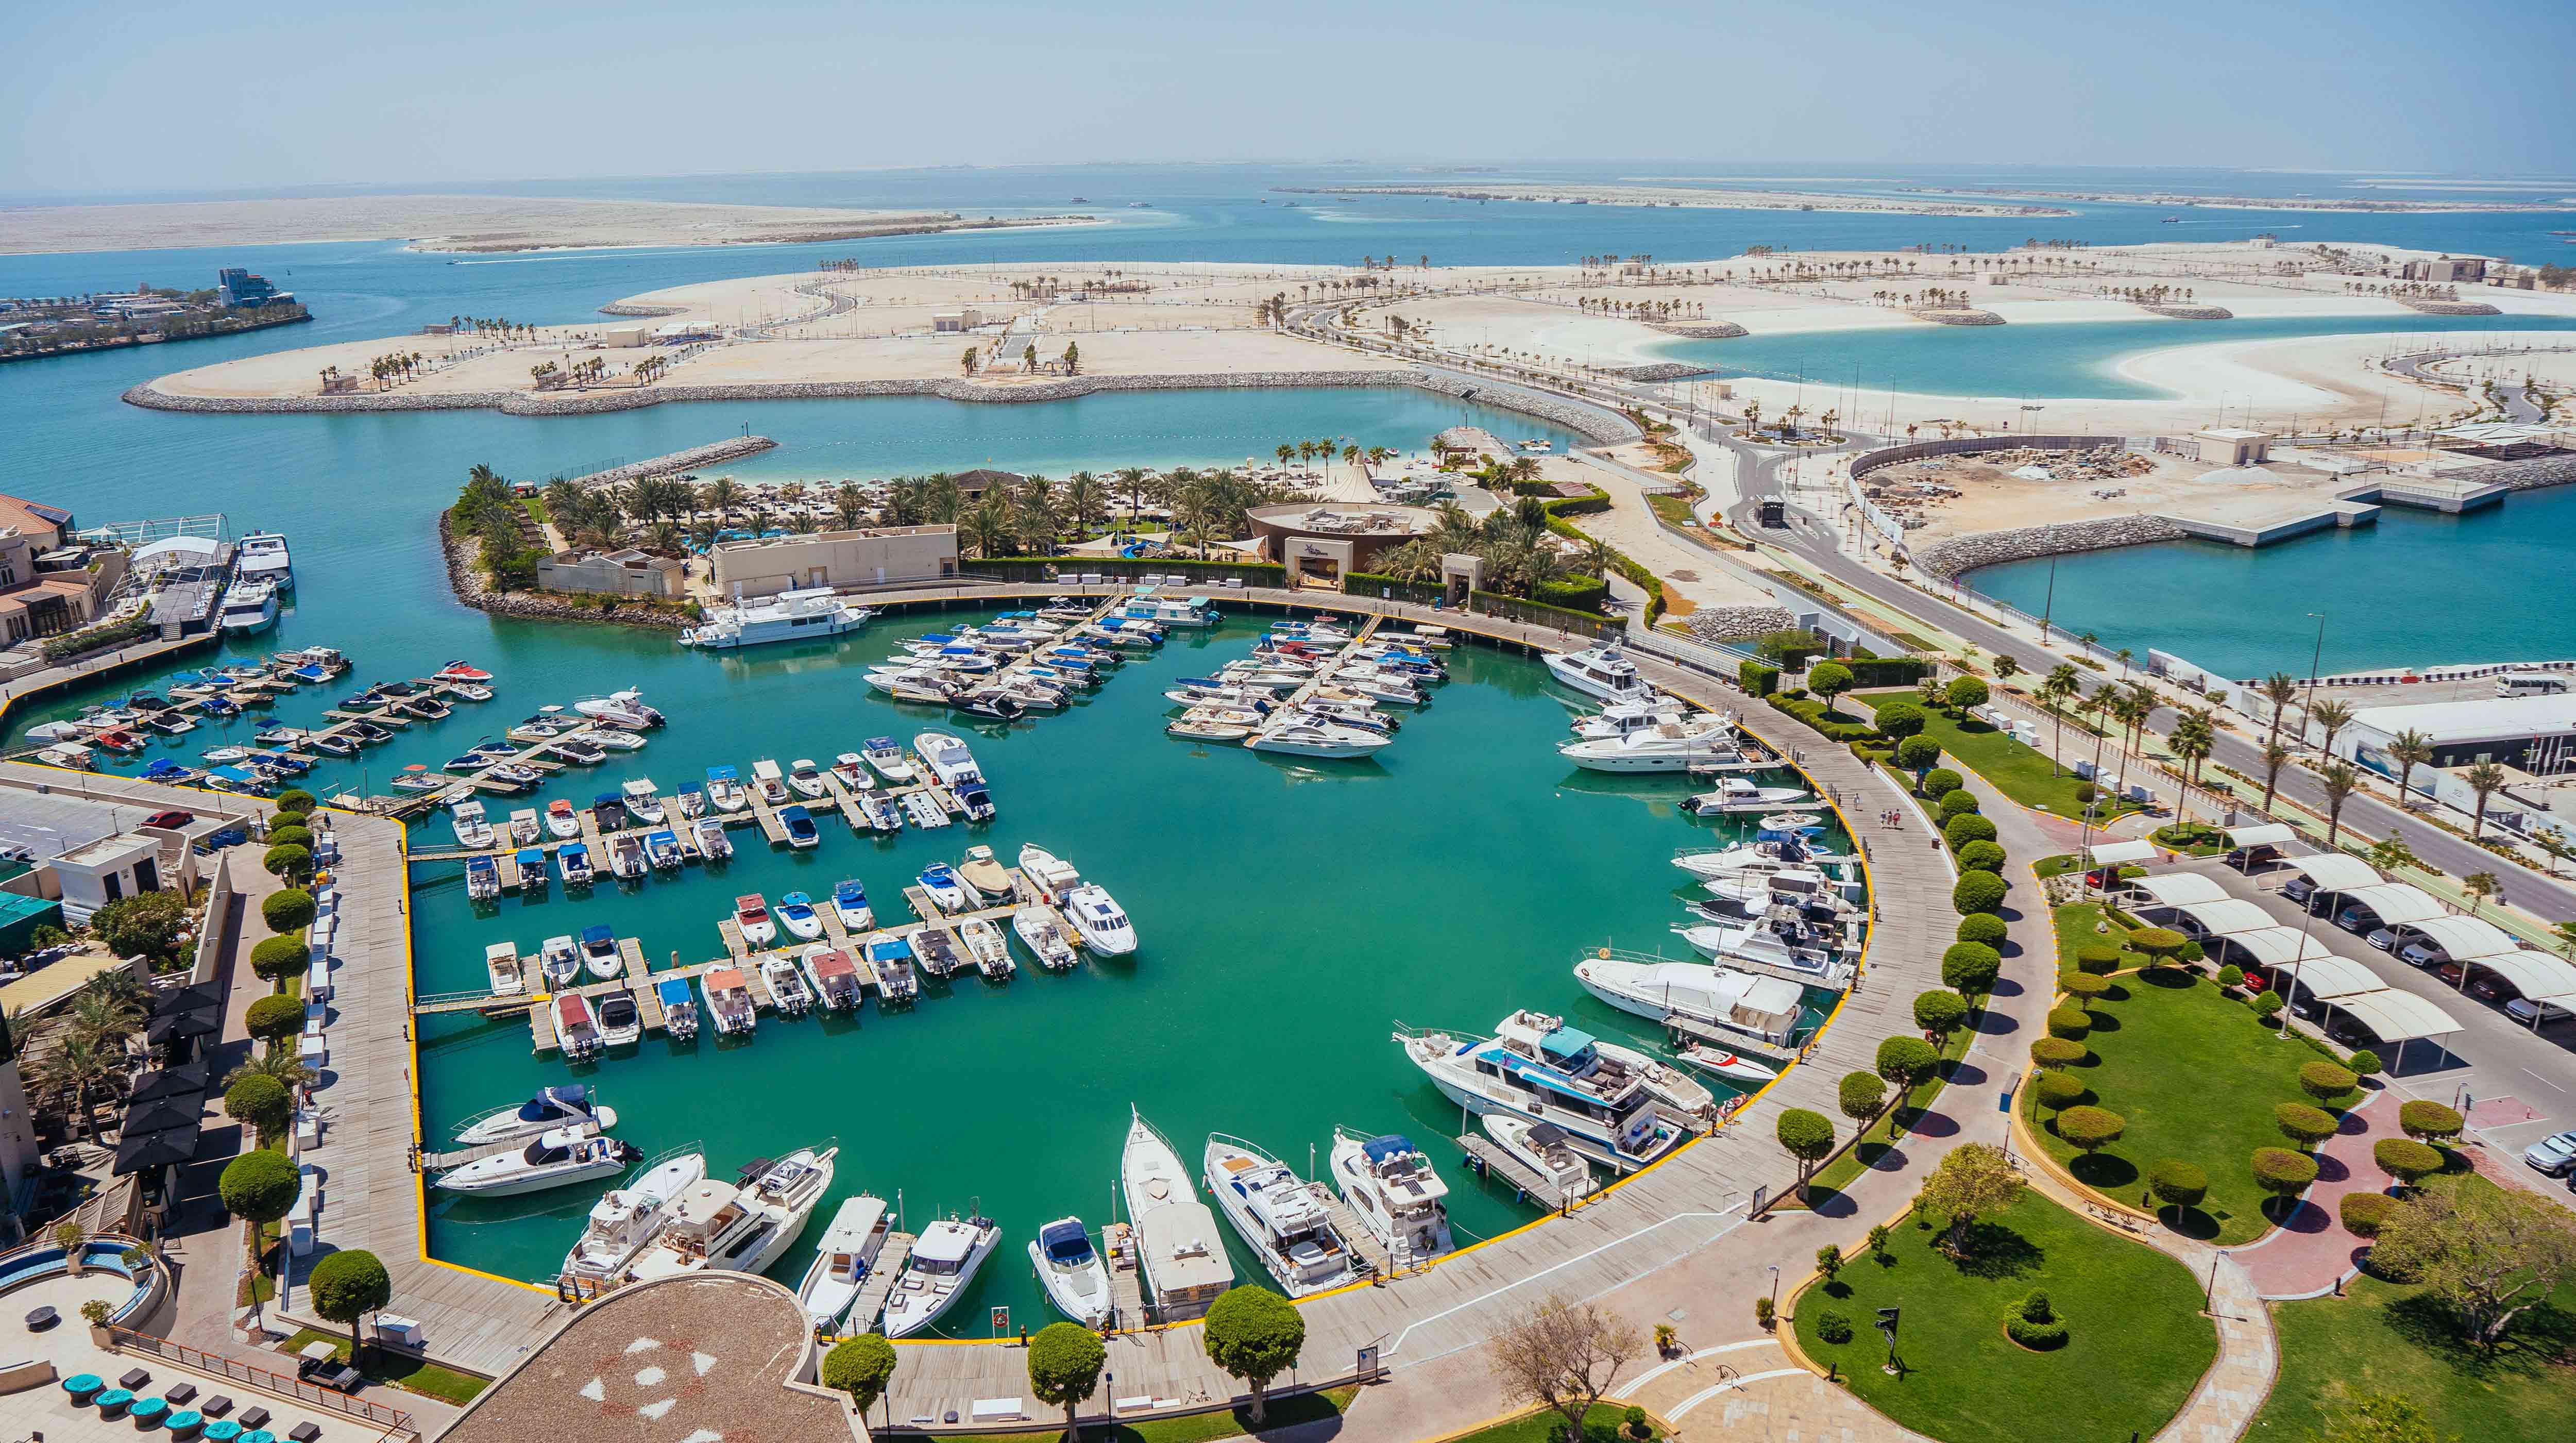 Boats docked at the InterContinental Abu Dhabi Marina